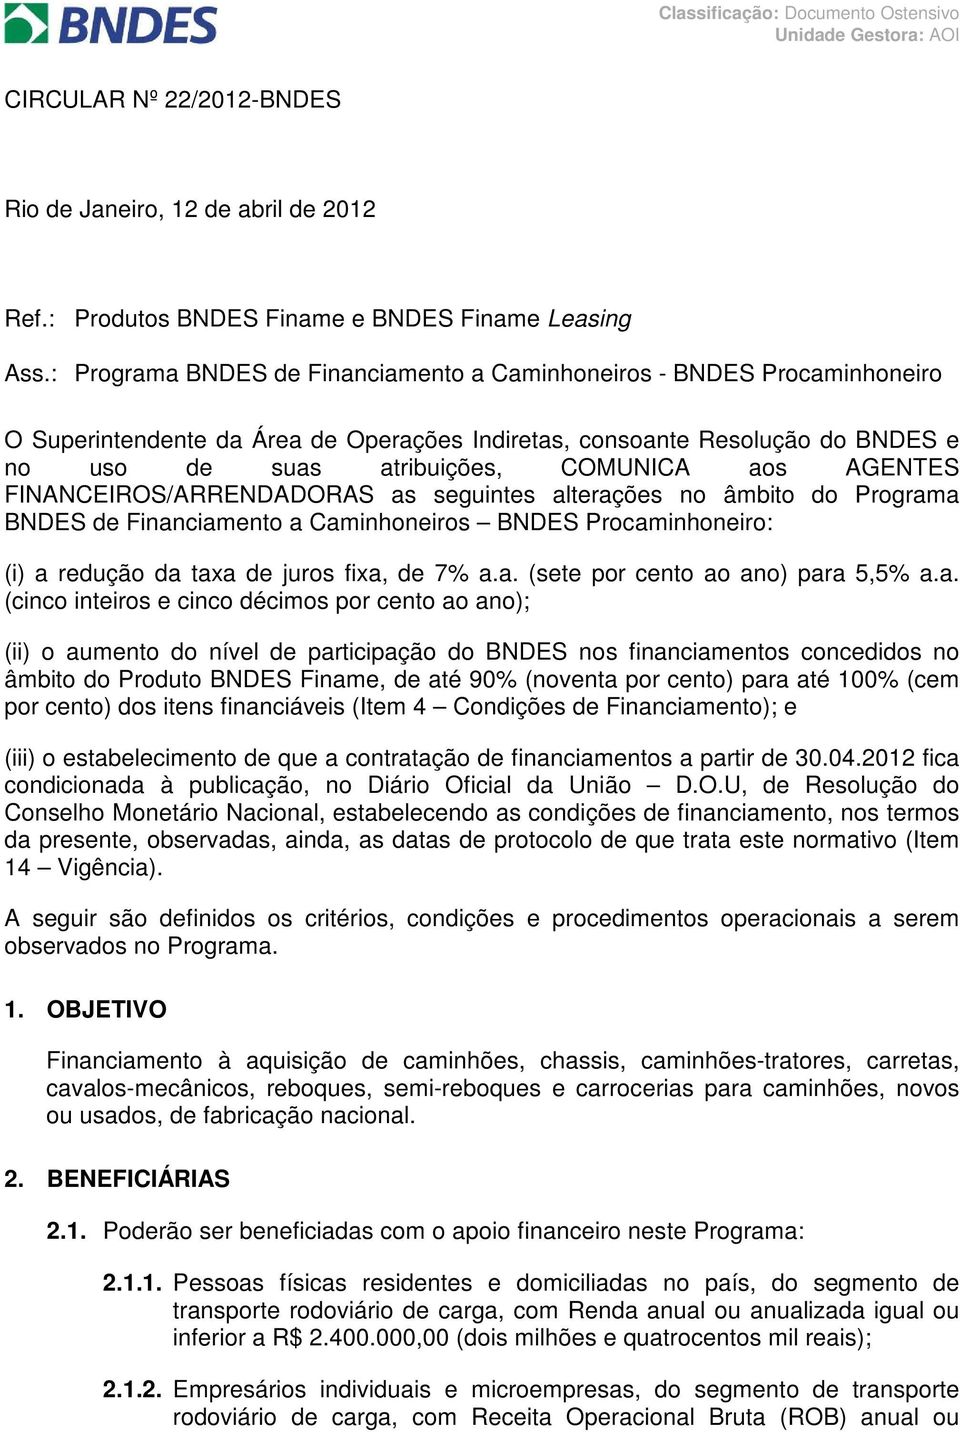 AGENTES FINANCEIROS/ARRENDADORAS as seguintes alterações no âmbito do Programa BNDES de Financiamento a Caminhoneiros BNDES Procaminhoneiro: (i) a redução da taxa de juros fixa, de 7% a.a. (sete por cento ao ano) para 5,5% a.